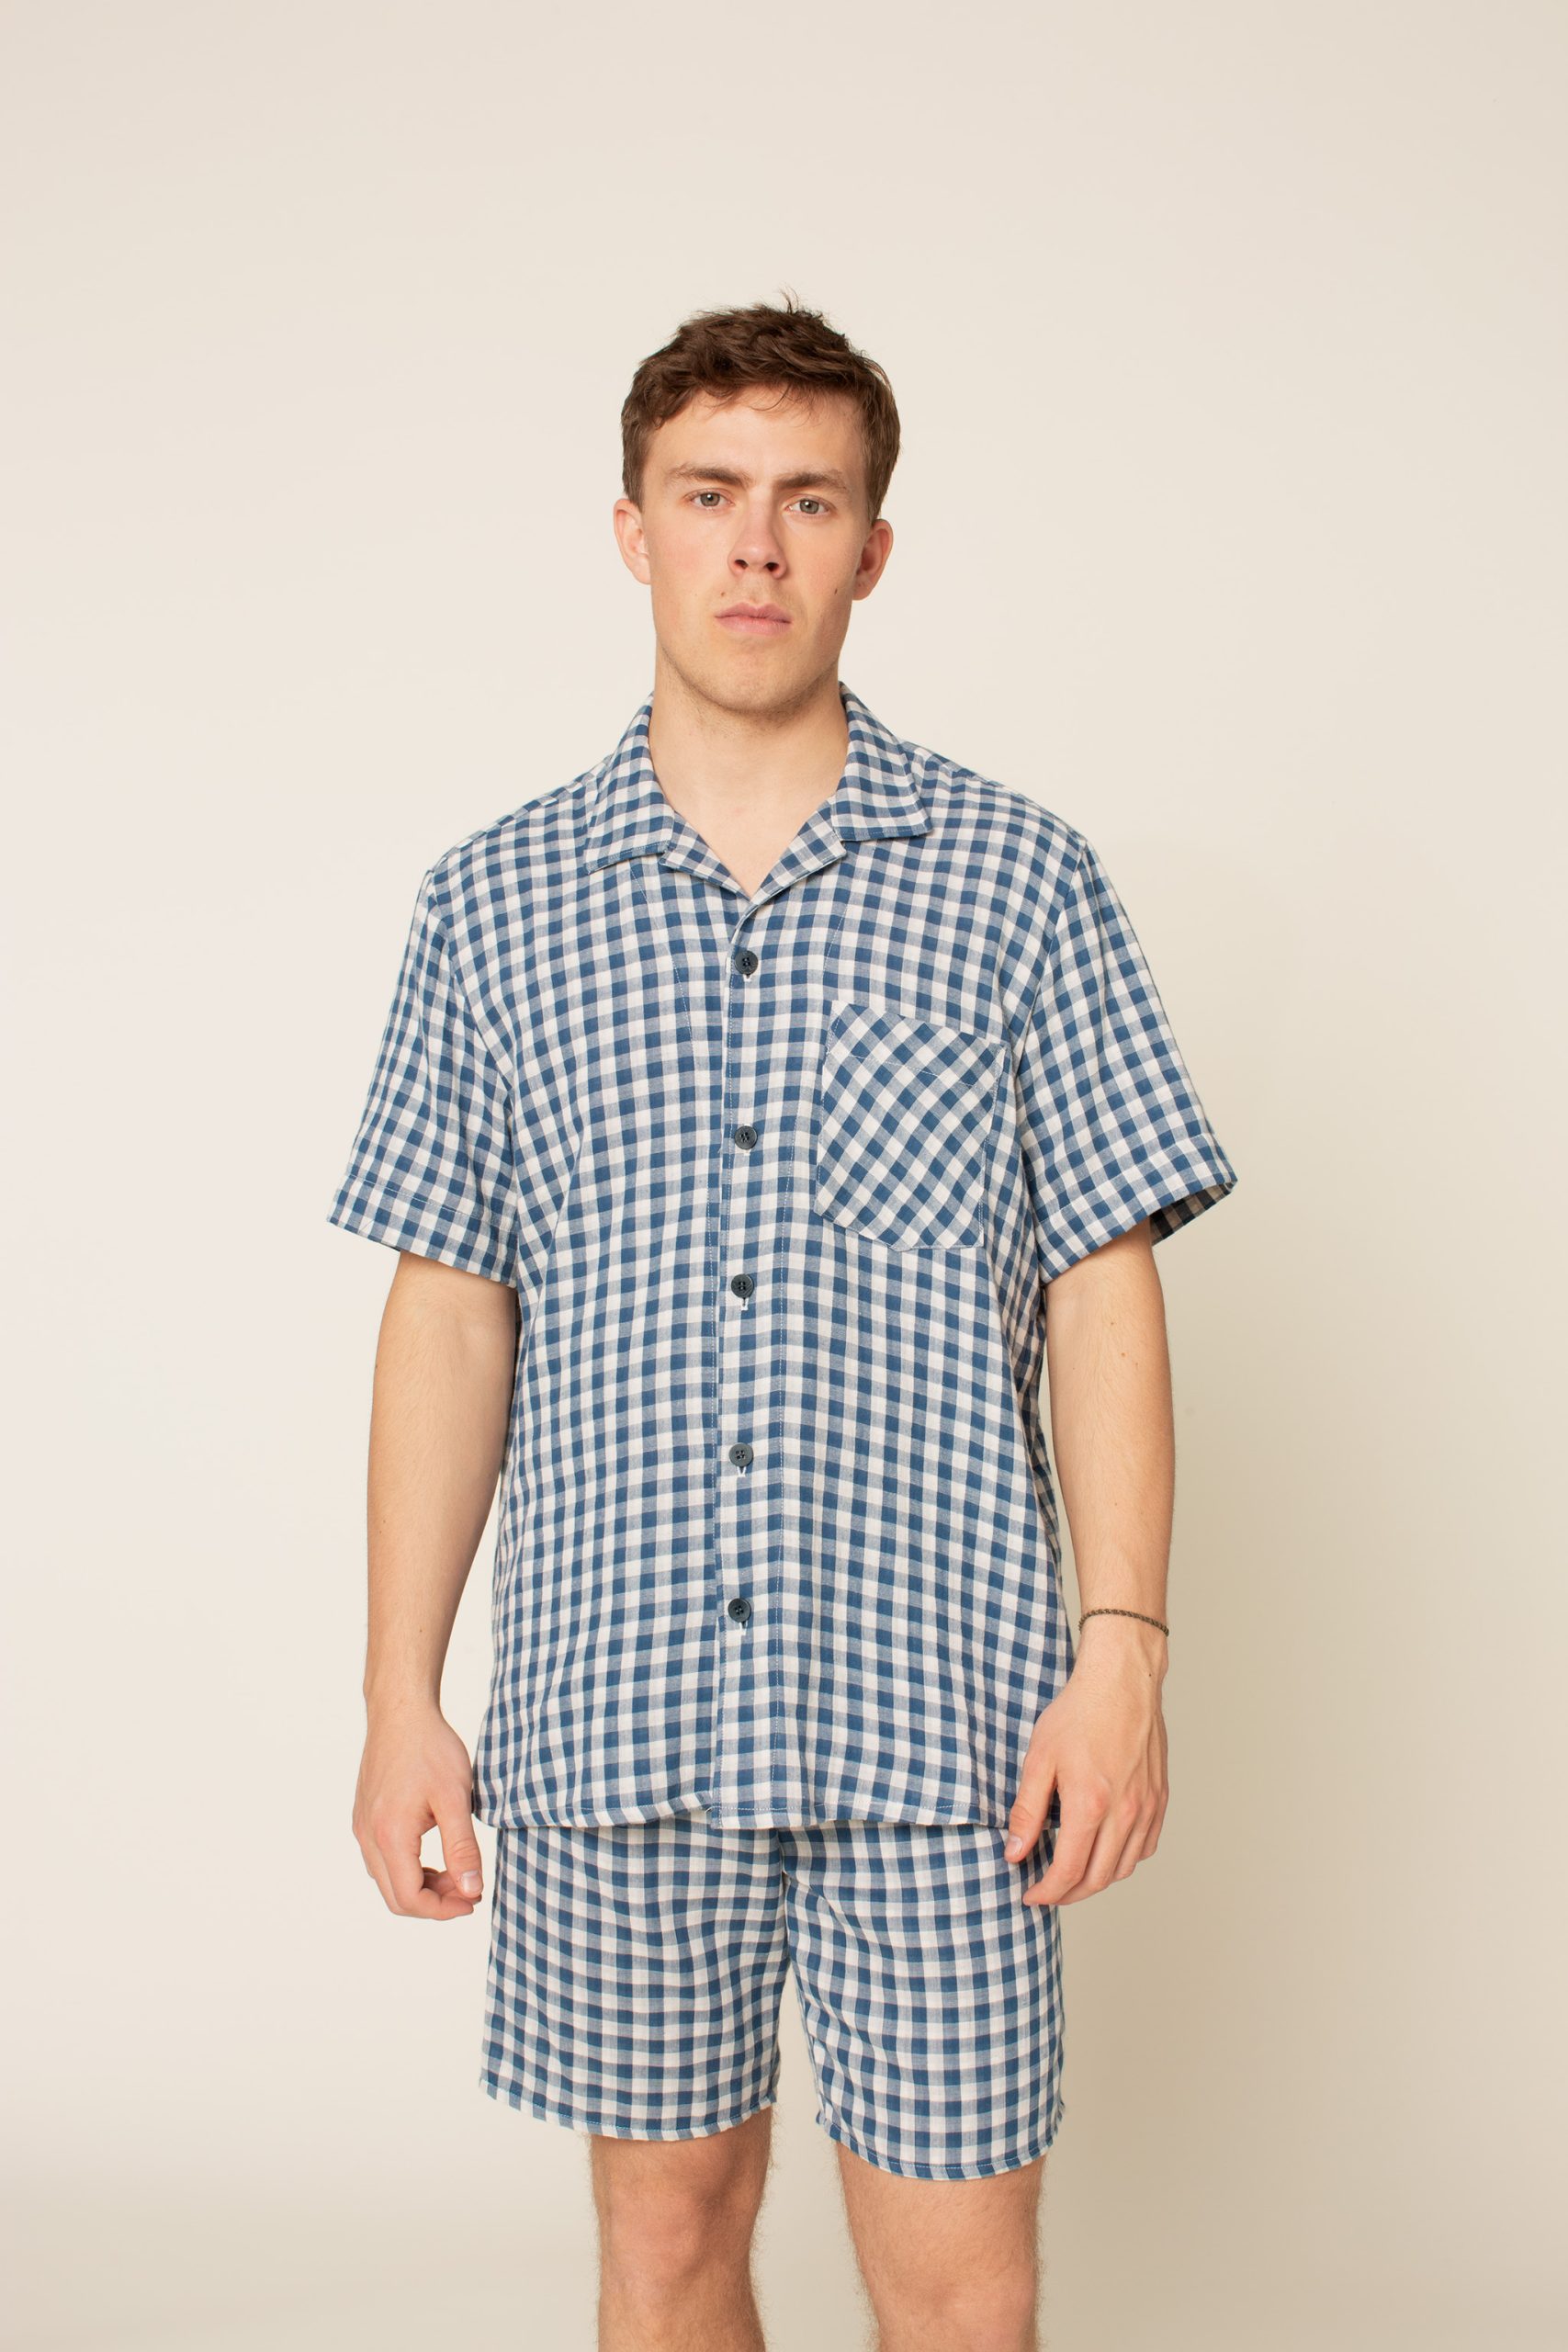 Wardrobe by Me Men's Tropical Shirt